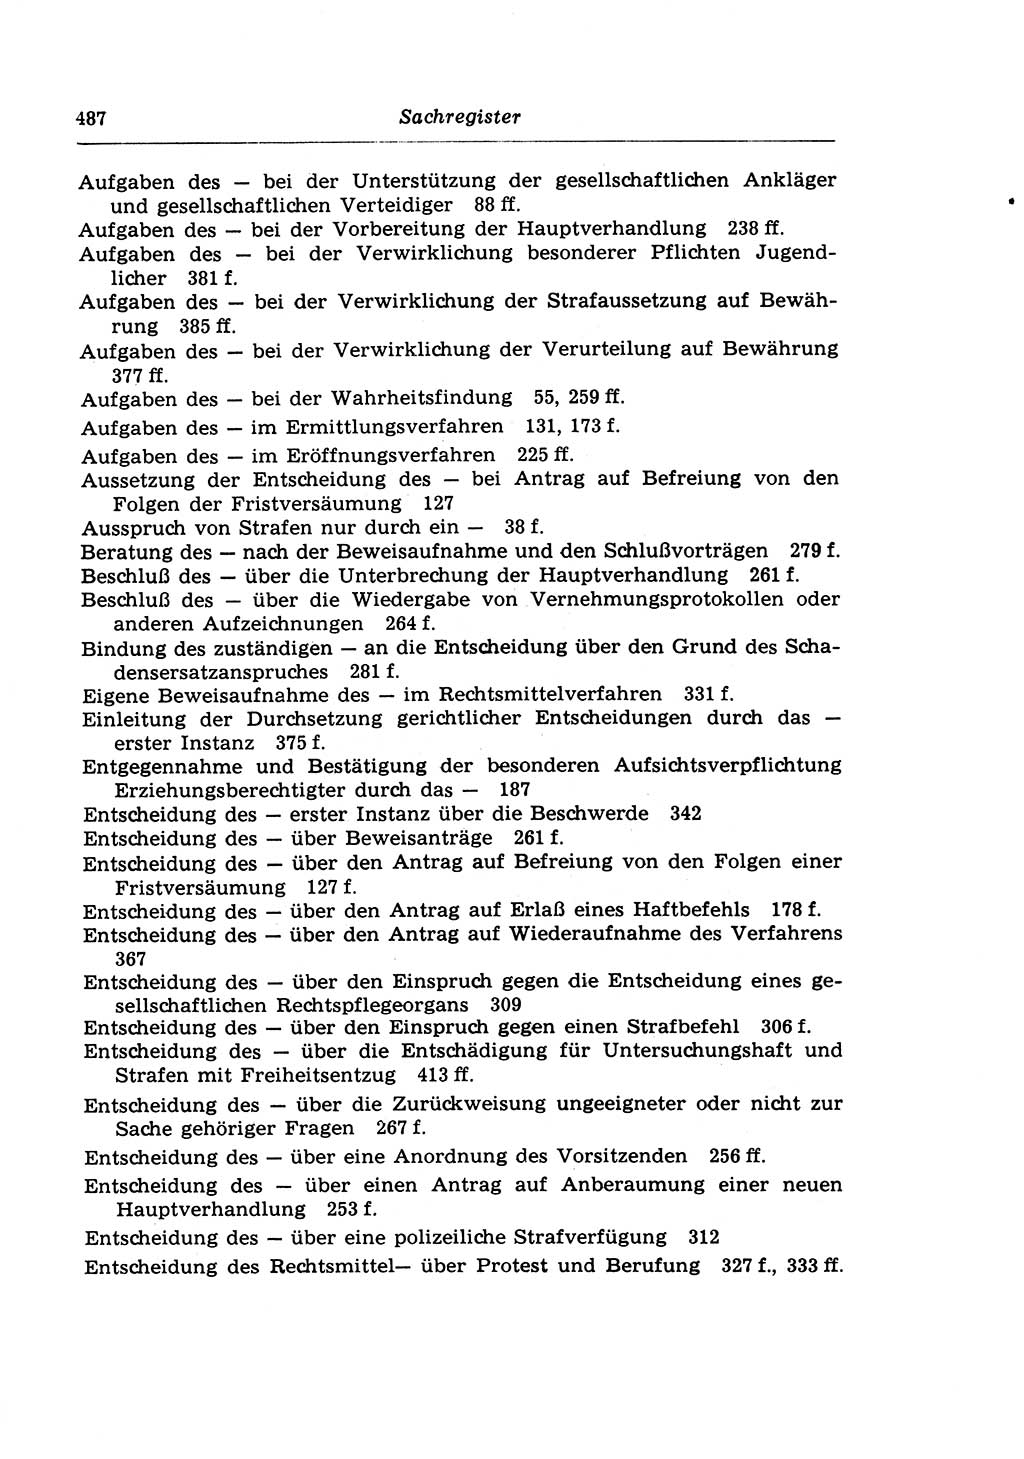 Strafprozeßrecht der DDR (Deutsche Demokratische Republik), Lehrkommentar zur Strafprozeßordnung (StPO) 1968, Seite 487 (Strafprozeßr. DDR Lehrkomm. StPO 19688, S. 487)